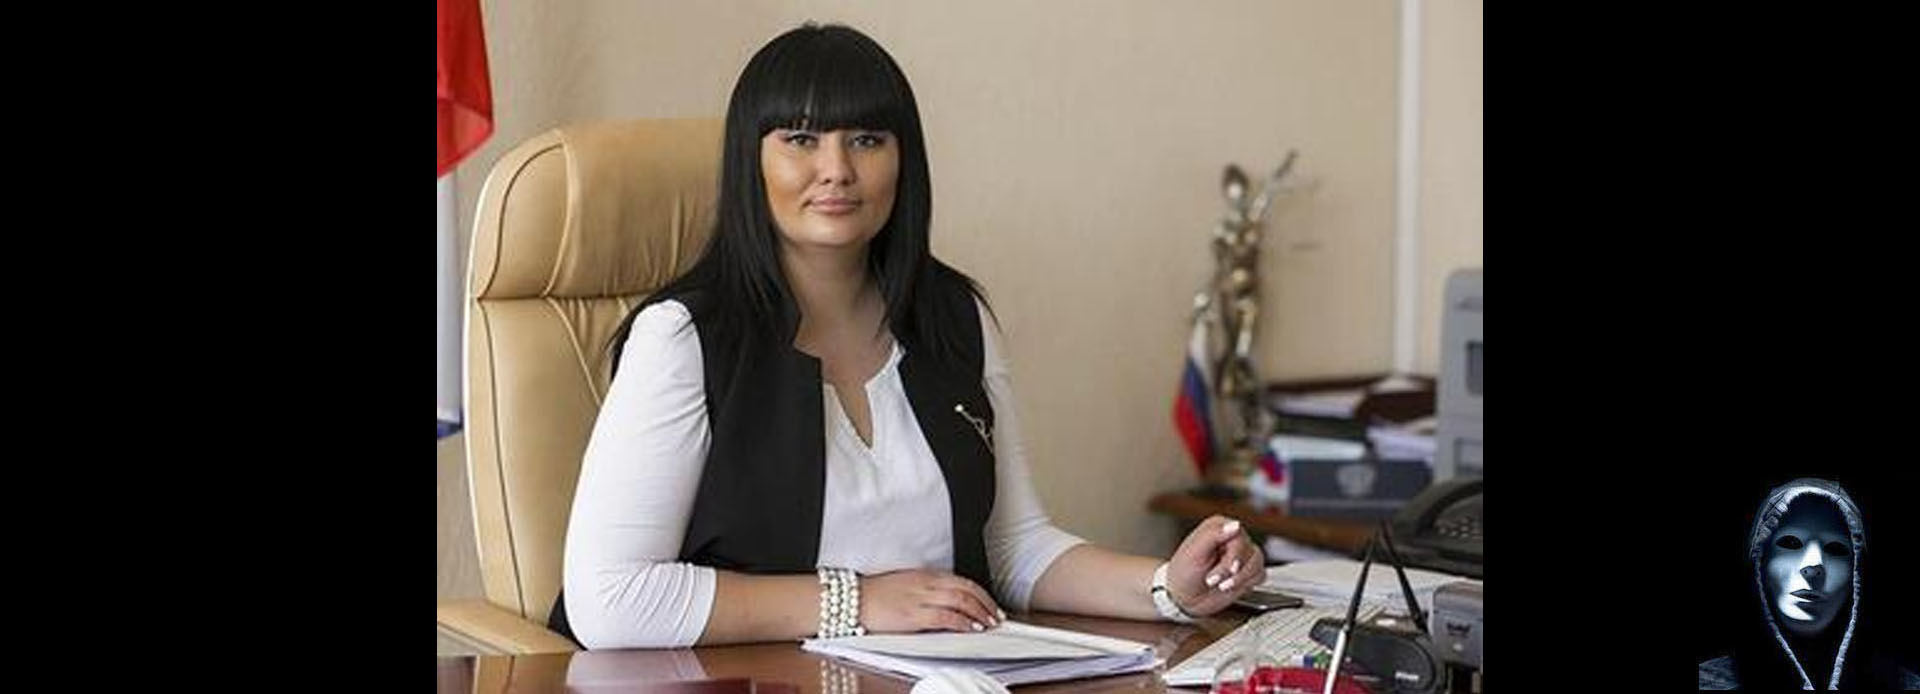 Адвокат Лилия Федоровна вымогала деньги